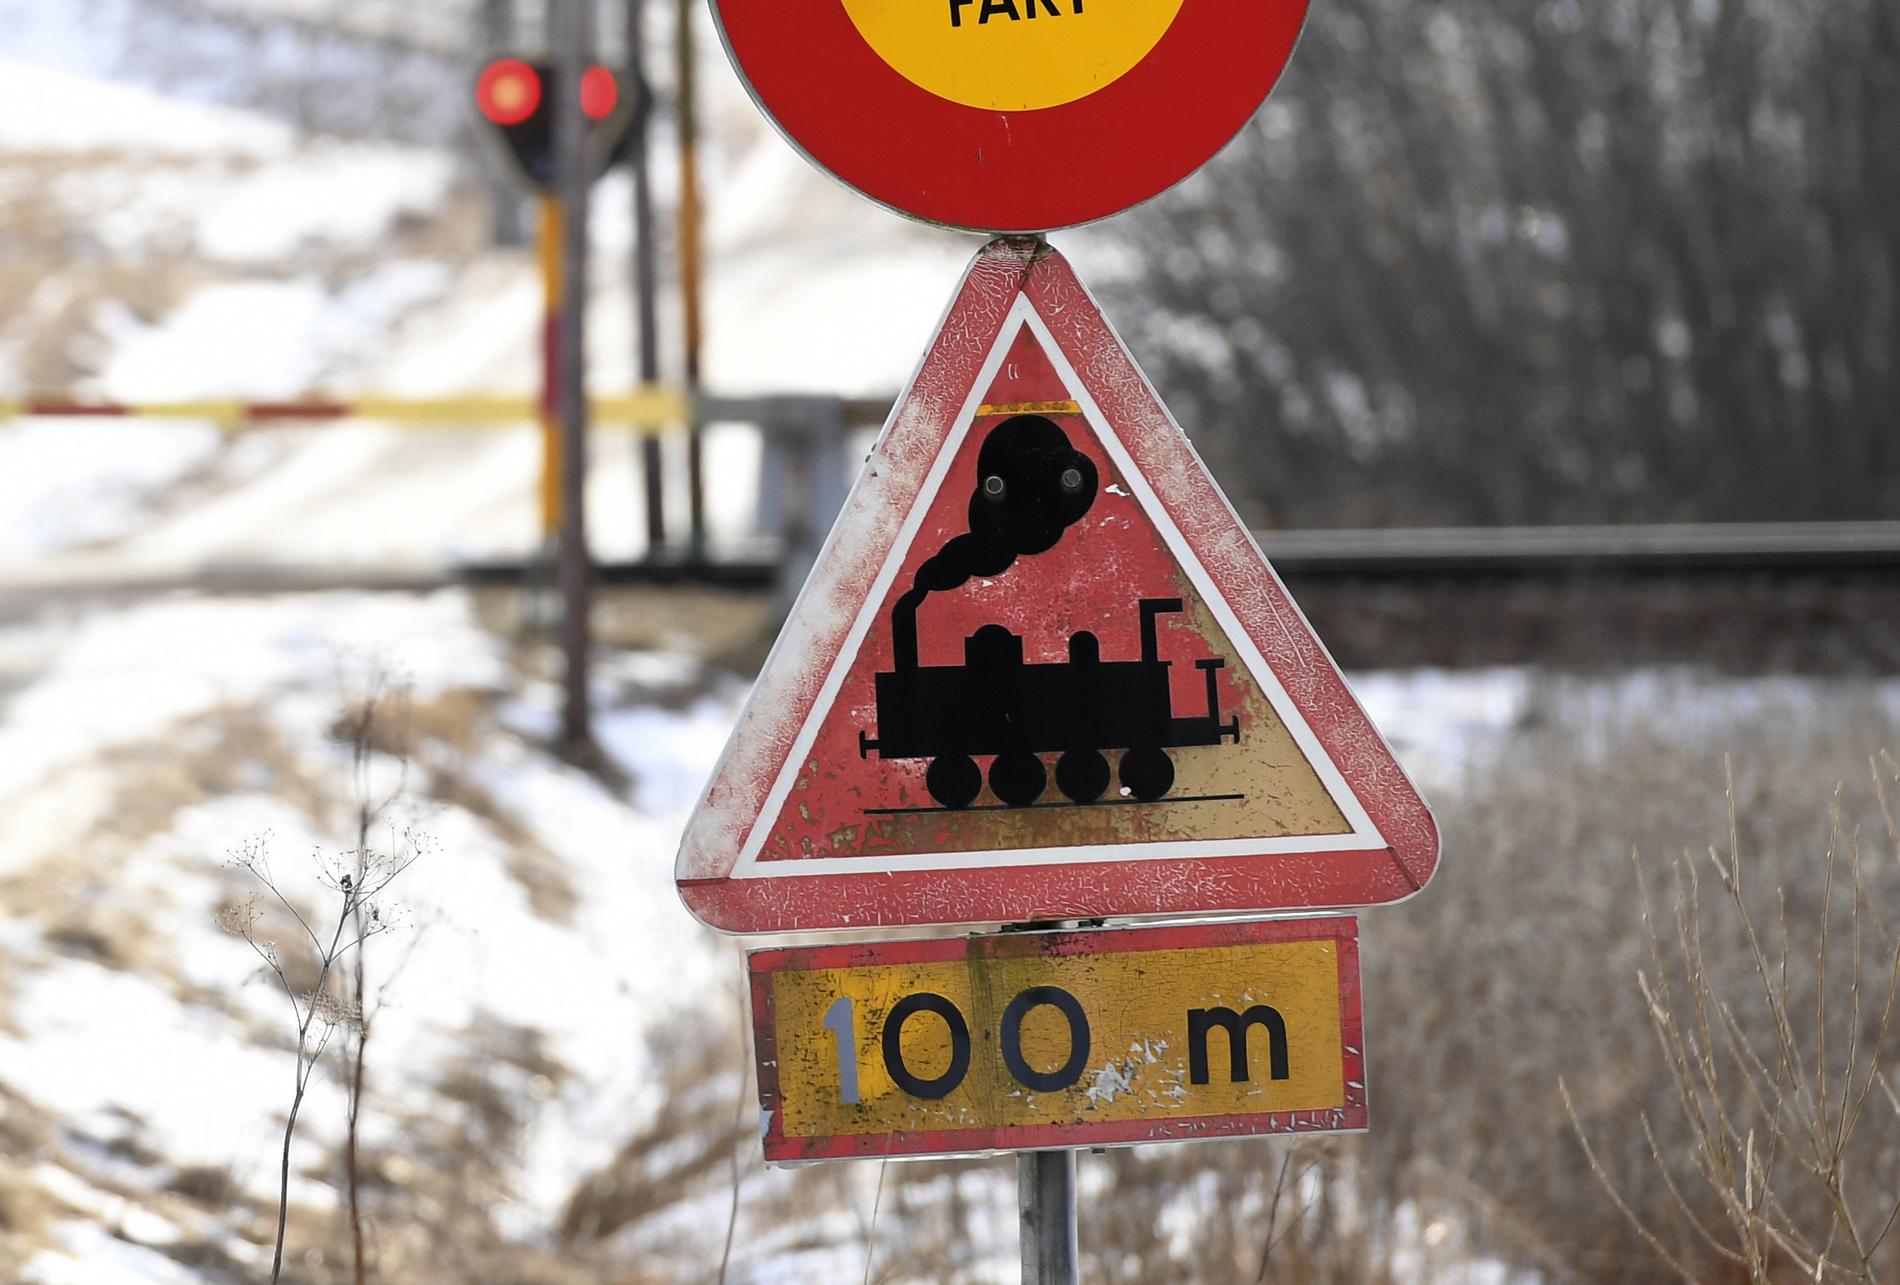 Två personer dog i en olycka vid en järnvägskorsning i Boden i helgen. Totalt har 15 personer omkommit i liknande olyckor i år. Arkivbild.